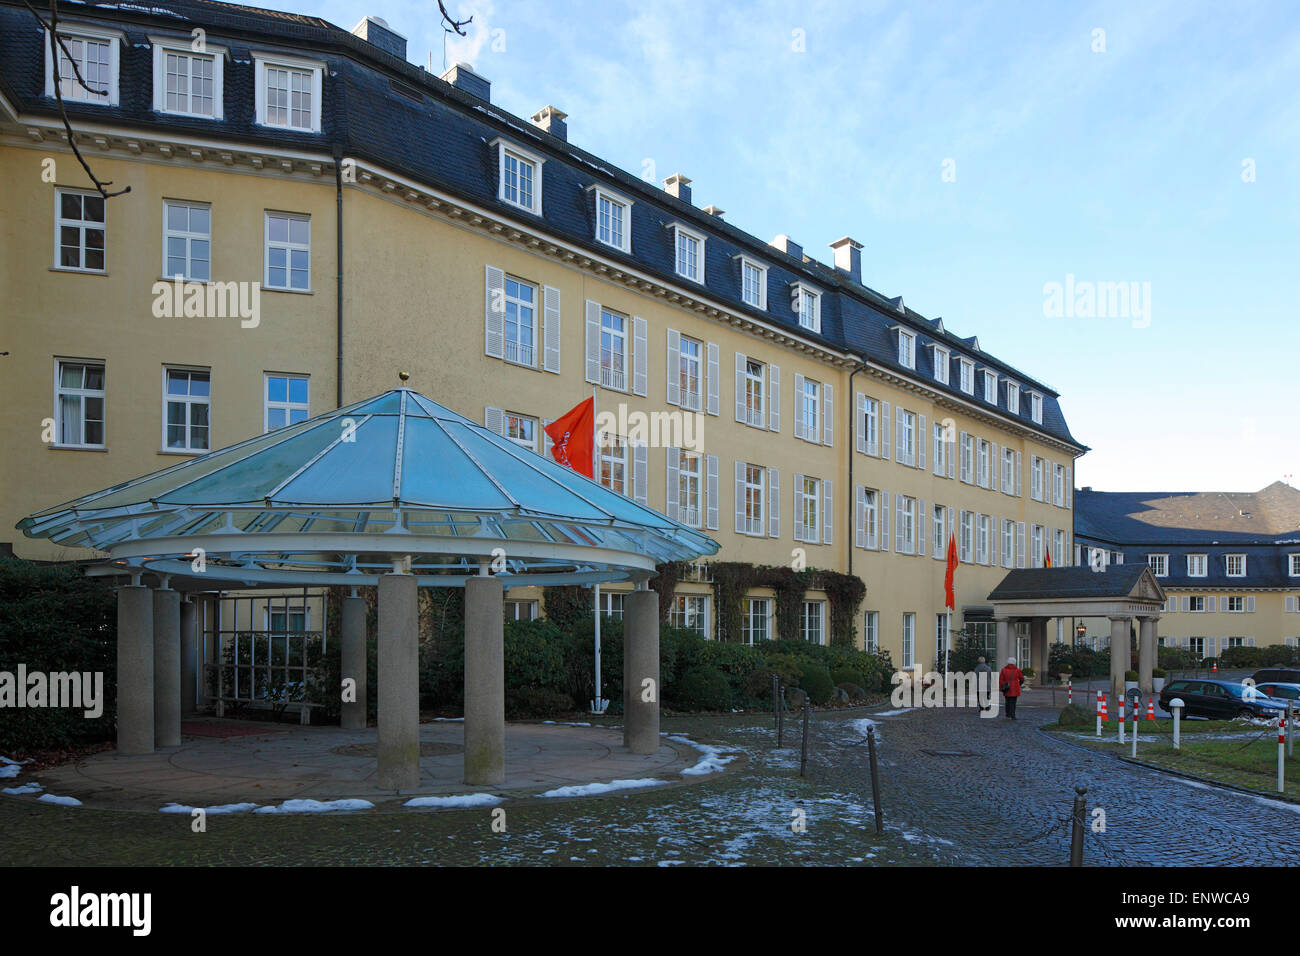 Steigenberger Hotel Grand auf dem Petersberg Gaestehaus im Siebengebirge, der Bundesregierung, Koenigswinter am Rhein Foto de stock